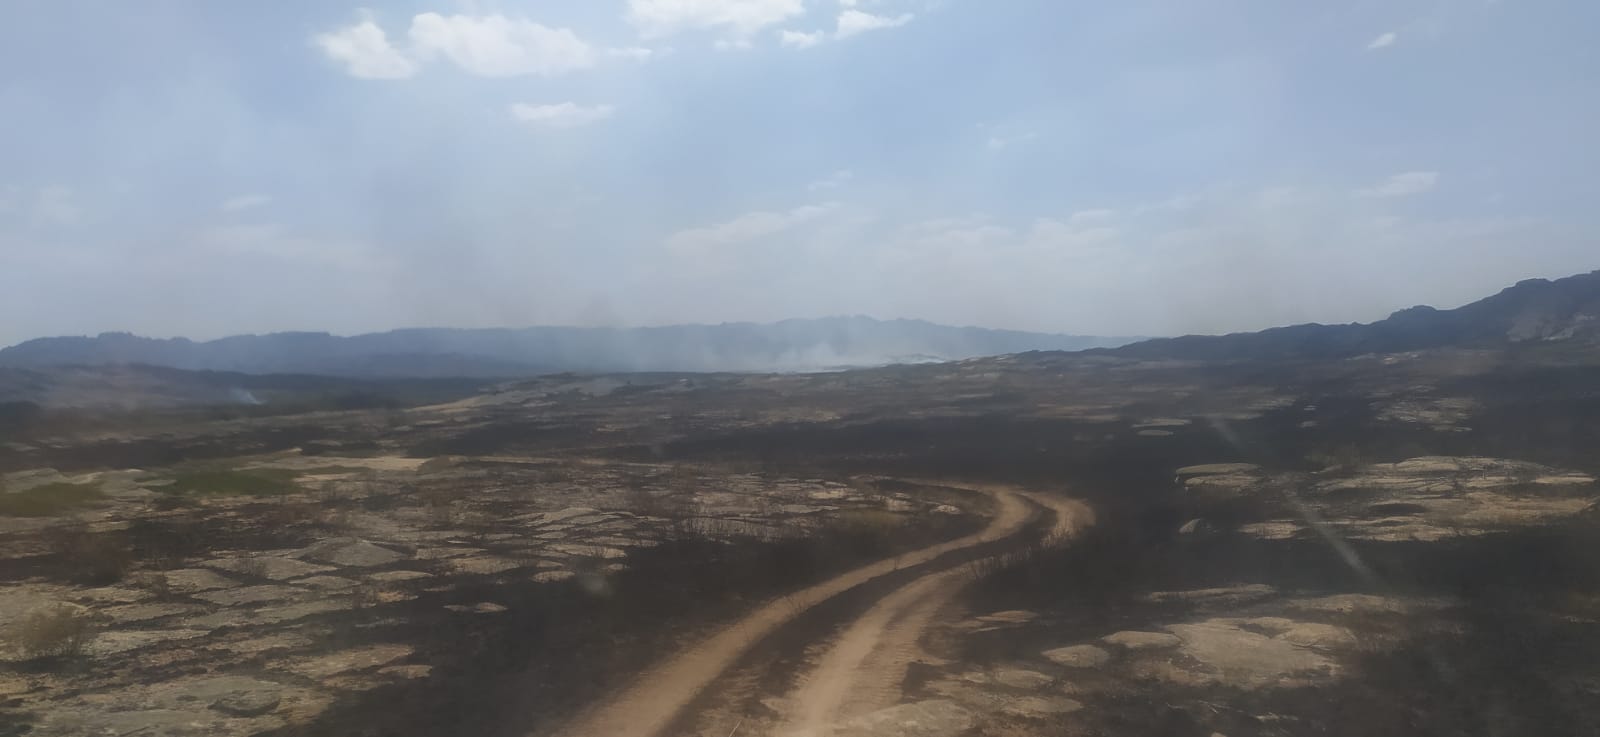 Природный пожар в Шетском районе: открытых очагов горения нет